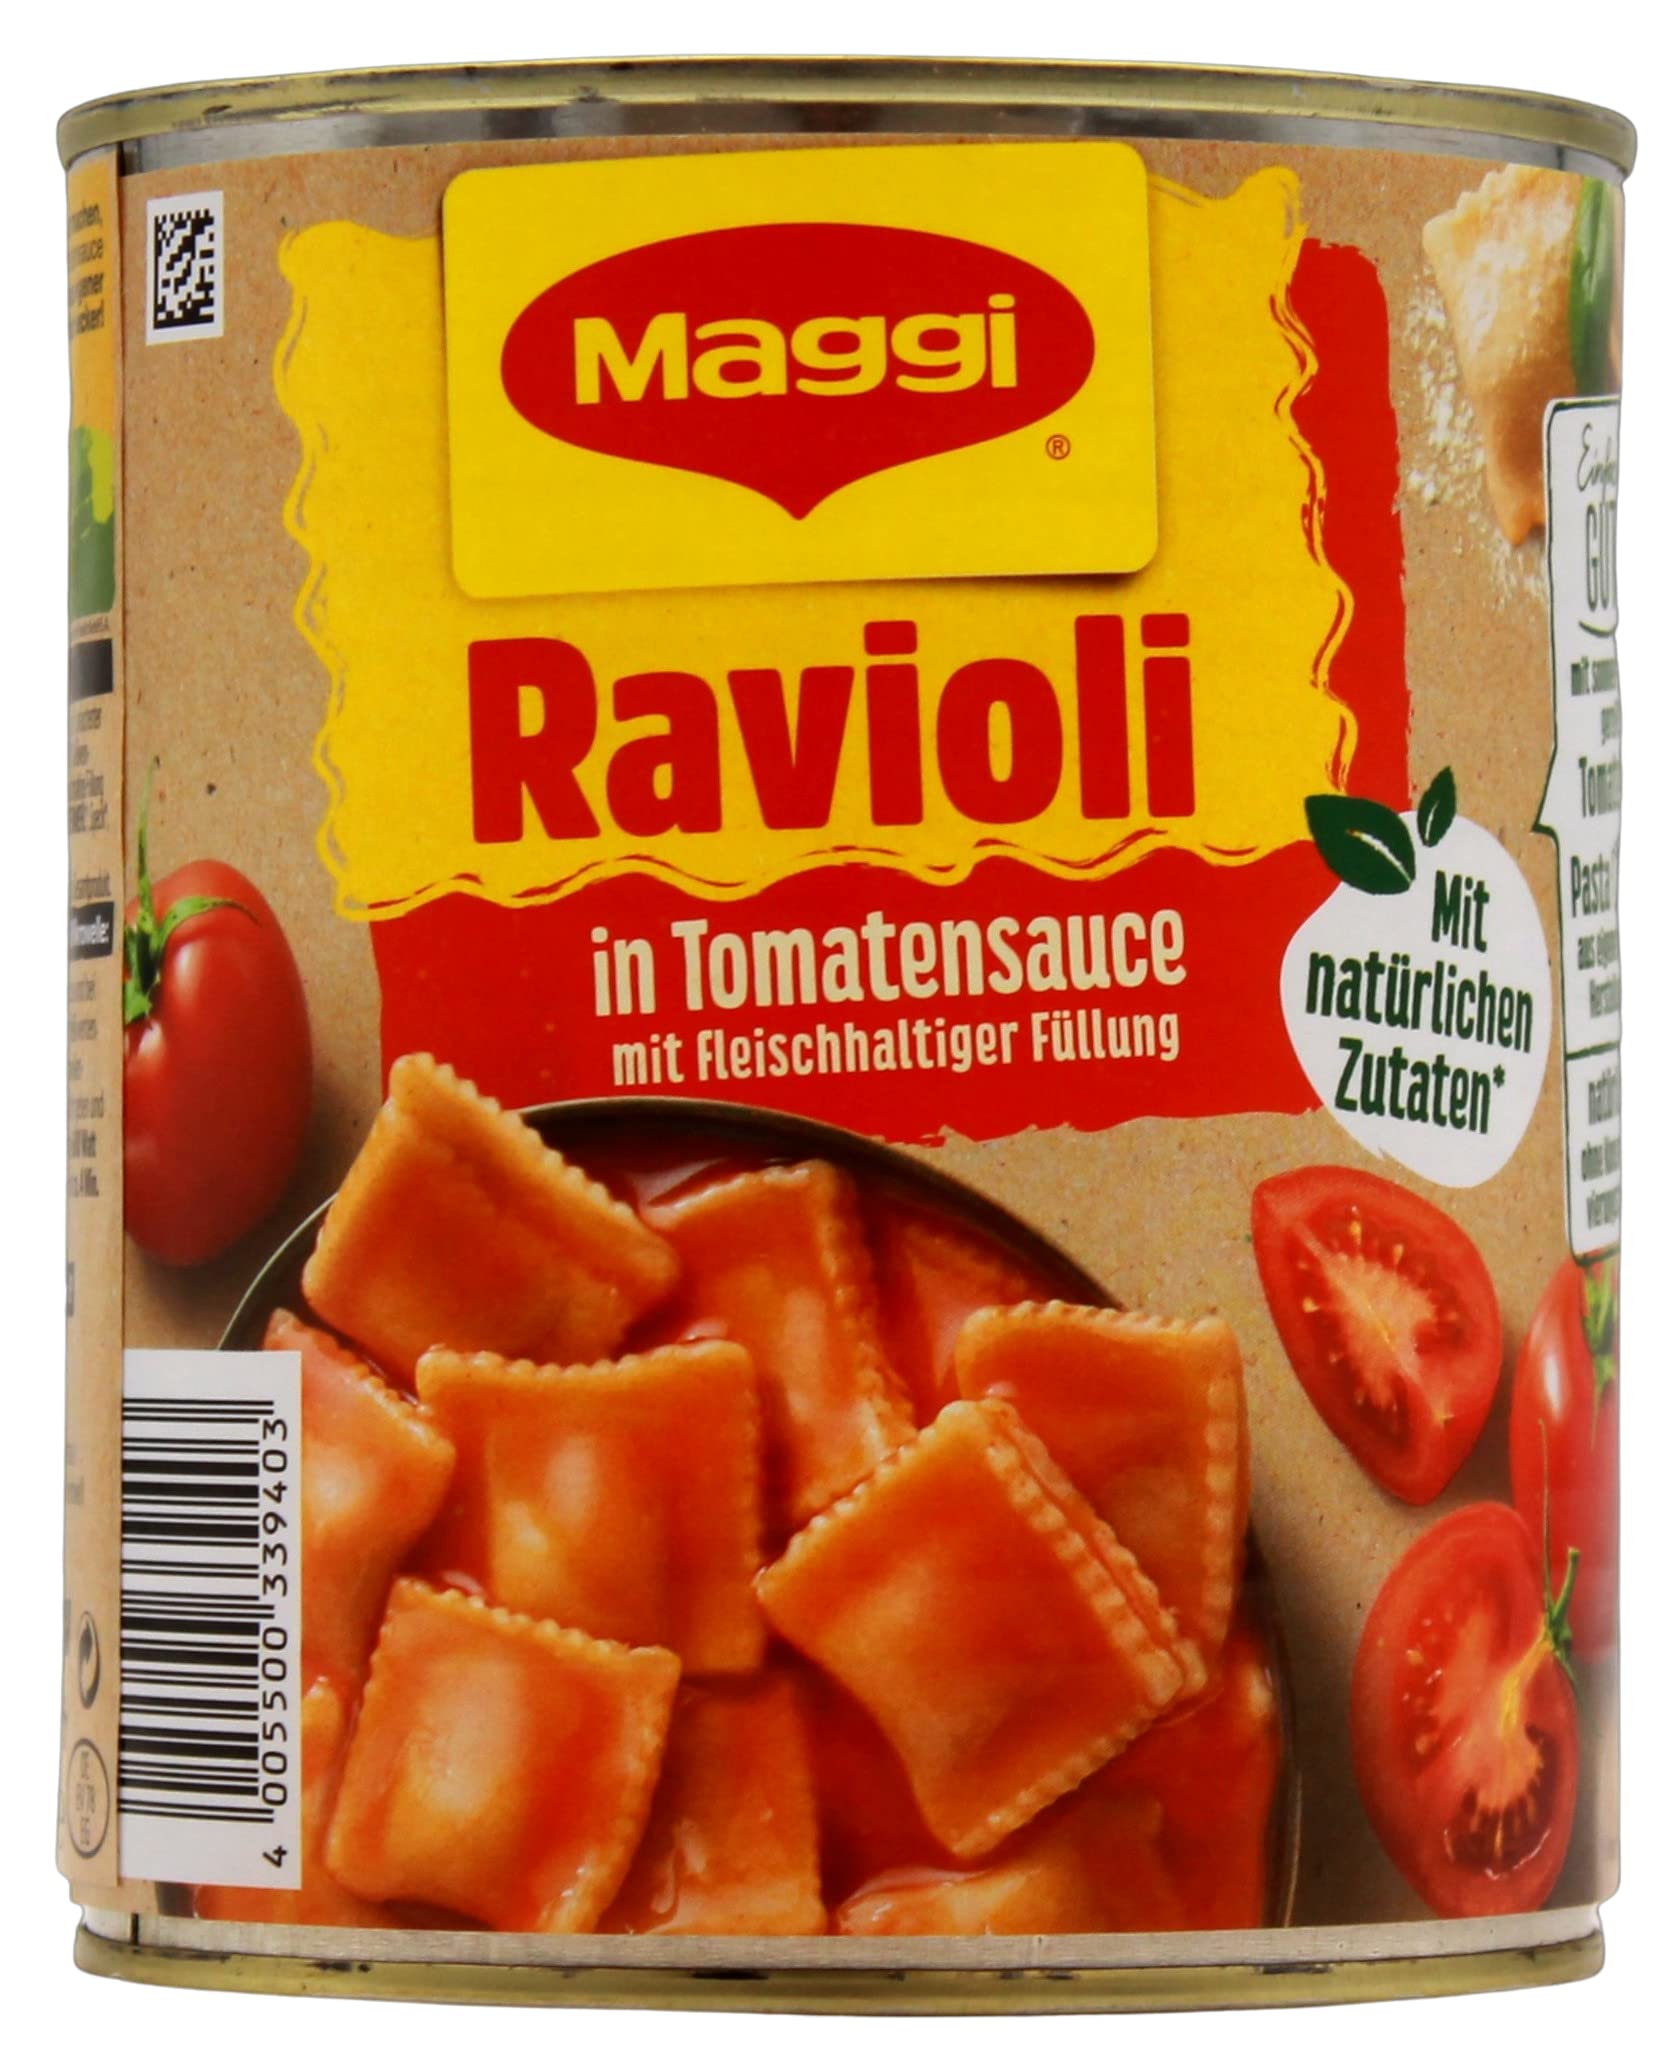 Maggi Ravioli in Tomatensauce mit fleischhaltiger Füllung, 6er Pack (6 x 800g)